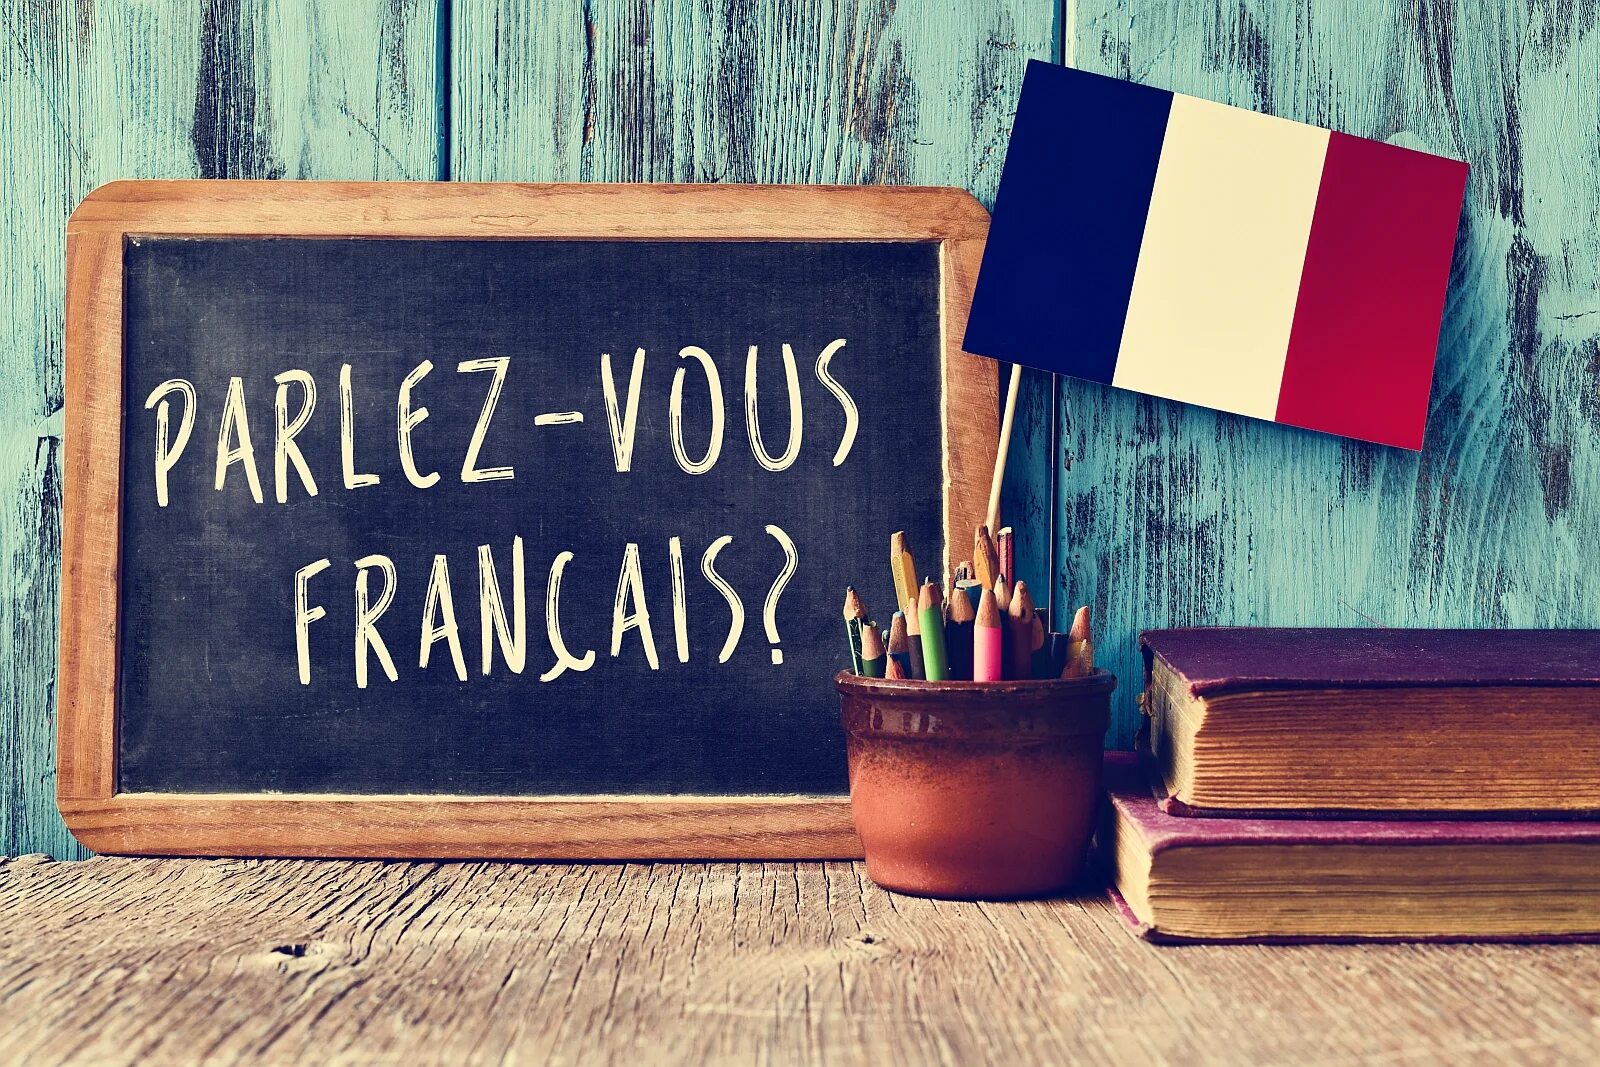 Французский язык. Урок французского языка. Изучение французского языка картинки. Французский язык в картинках.